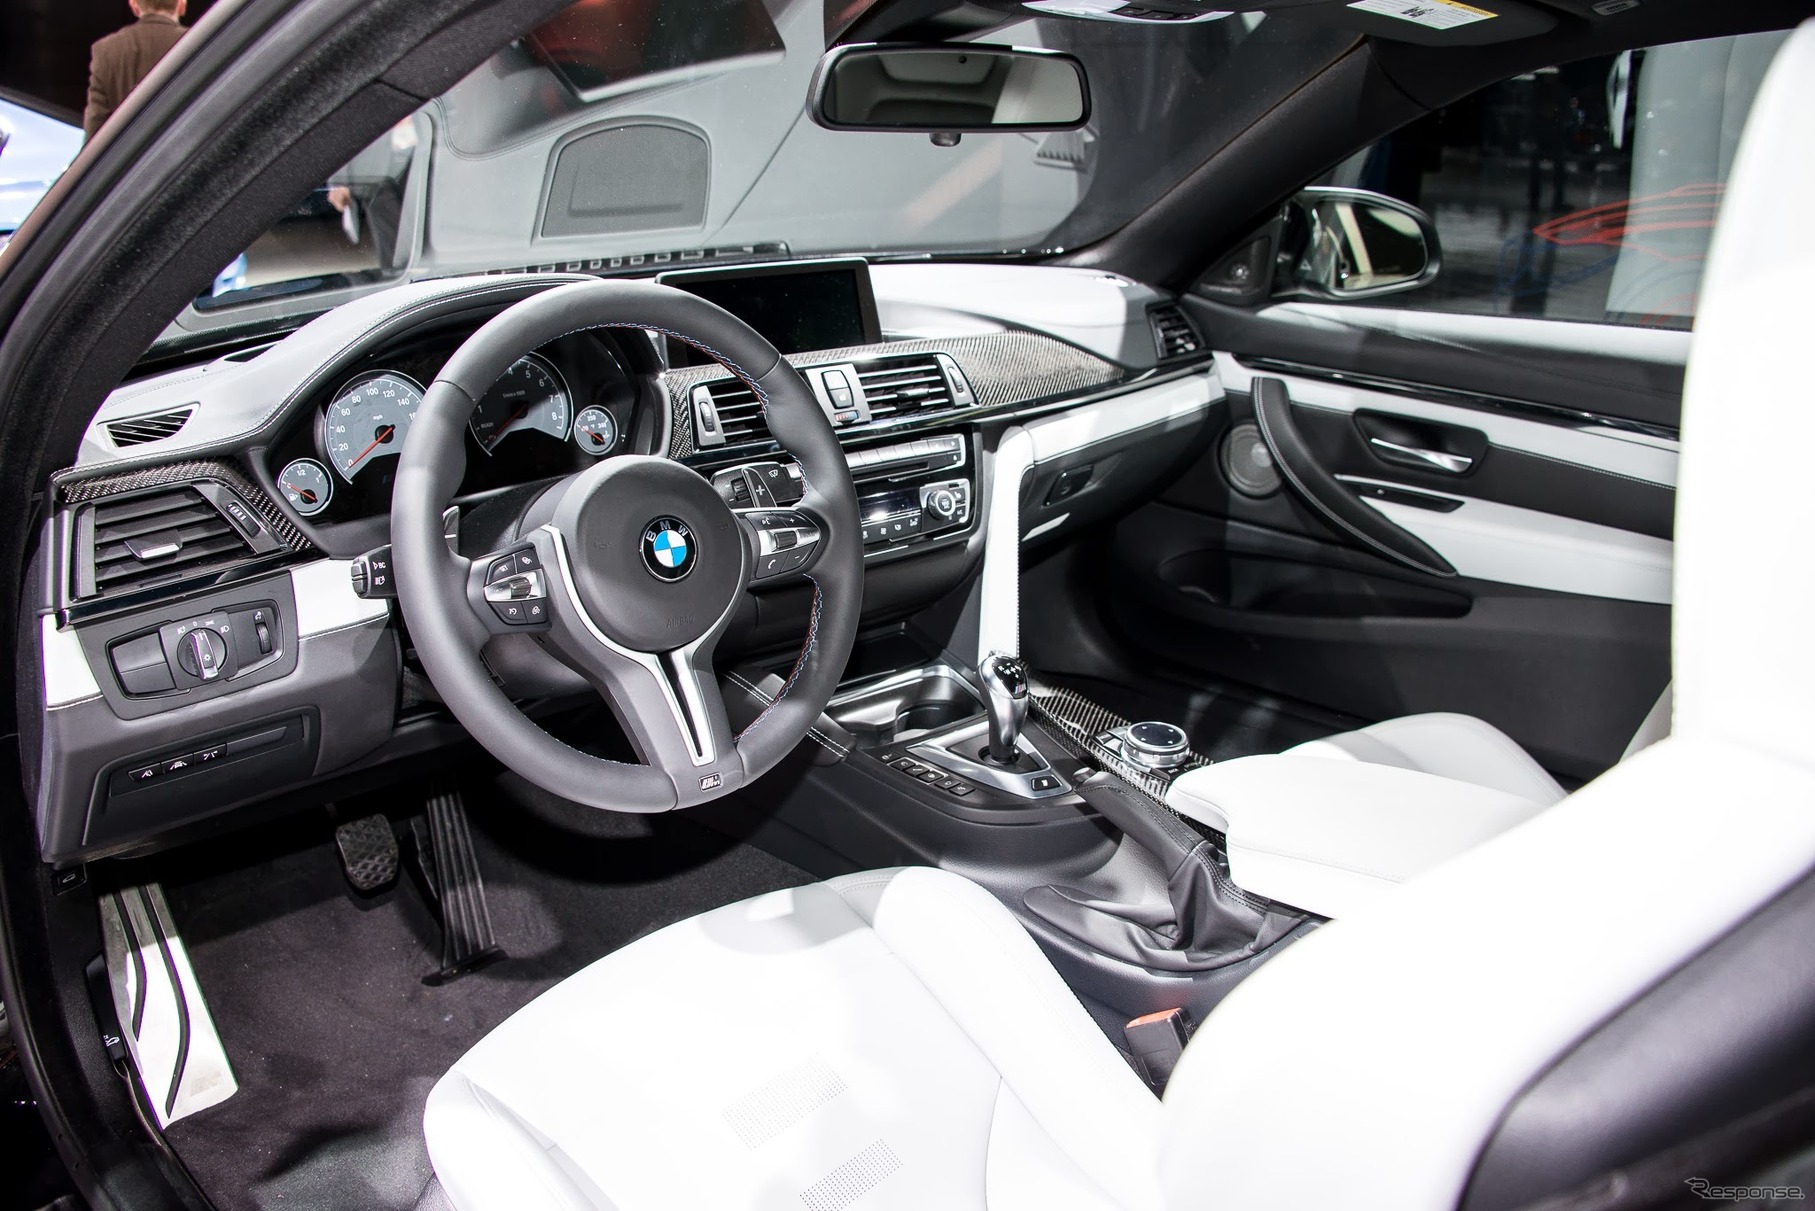 【デトロイトモーターショー14】BMW M3セダン 新型とM4 クーペ登場「成功物語、次なる章へ」